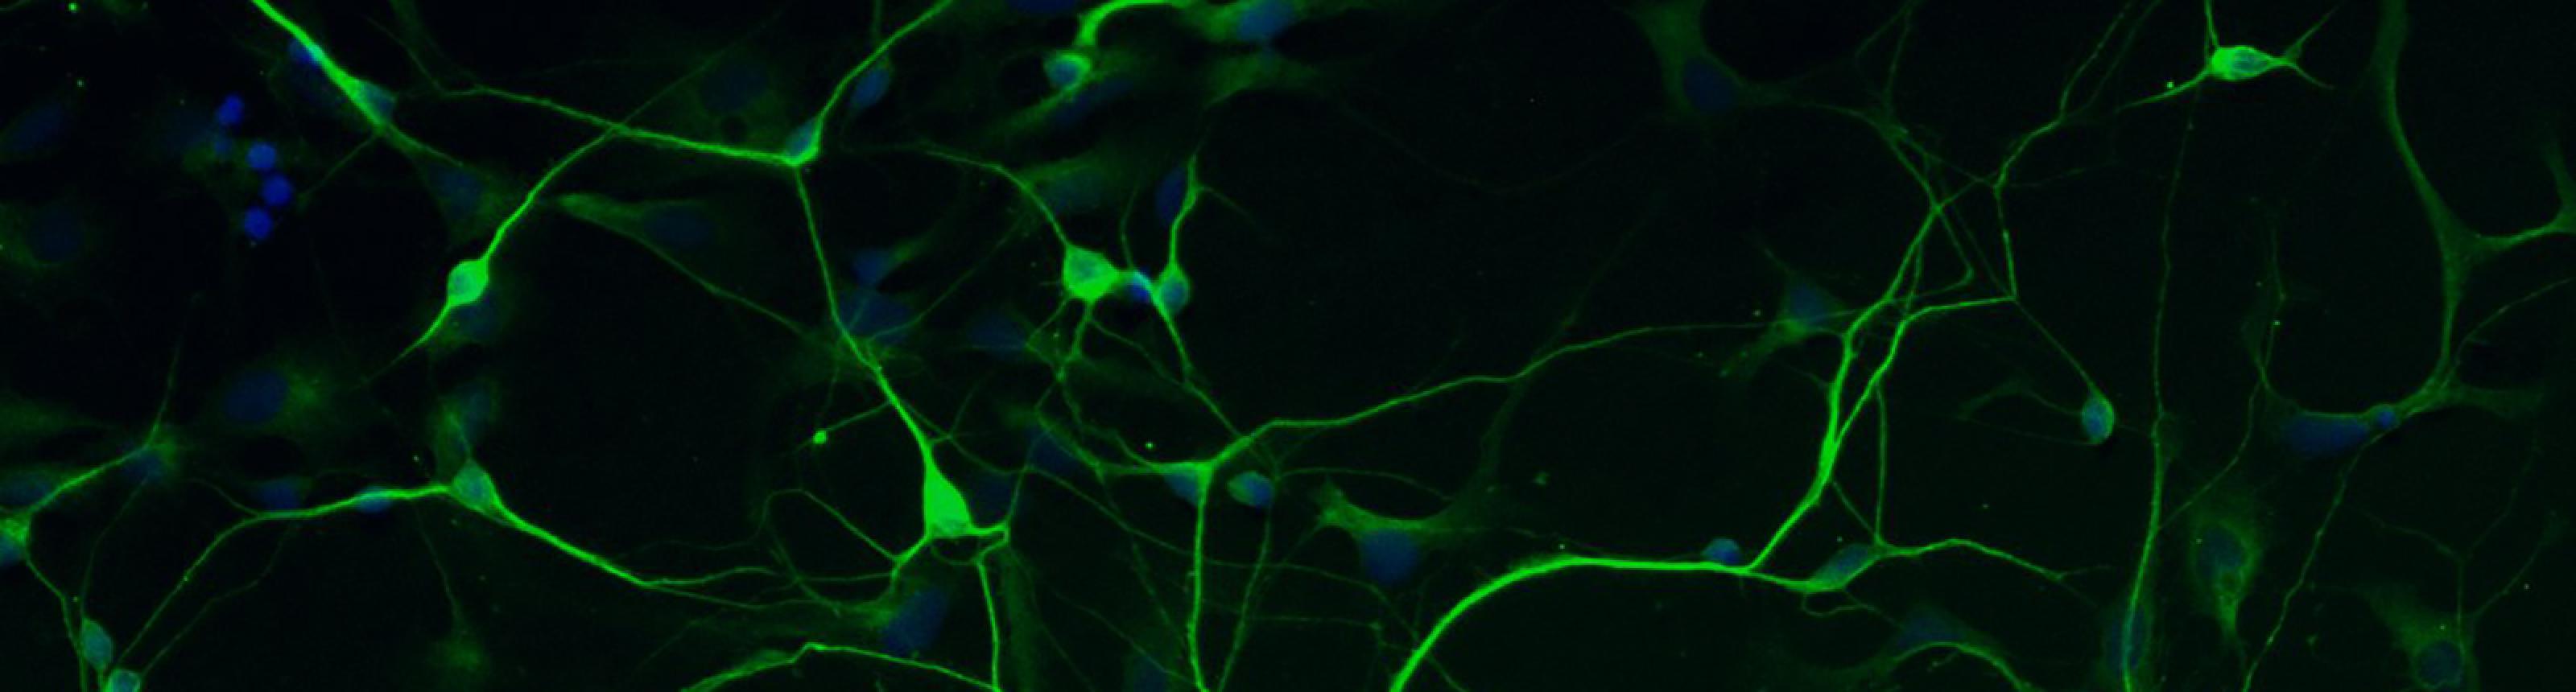 human stem cell-derived neurons